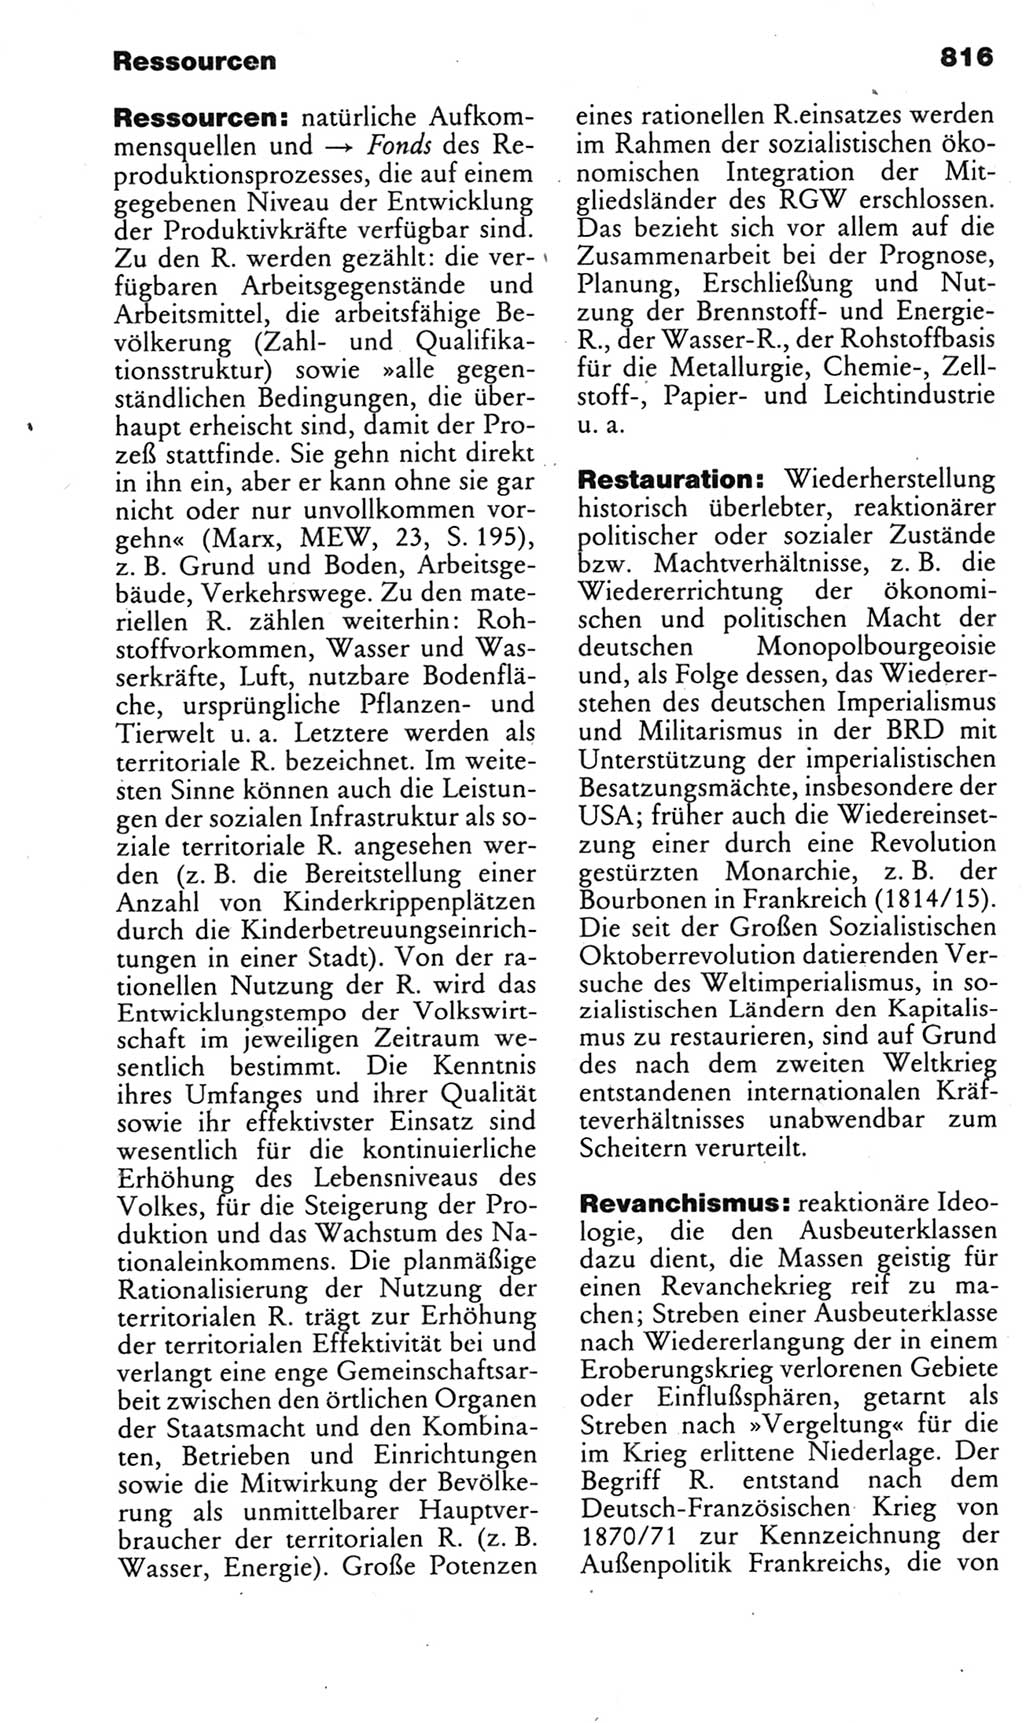 Kleines politisches Wörterbuch [Deutsche Demokratische Republik (DDR)] 1985, Seite 816 (Kl. pol. Wb. DDR 1985, S. 816)